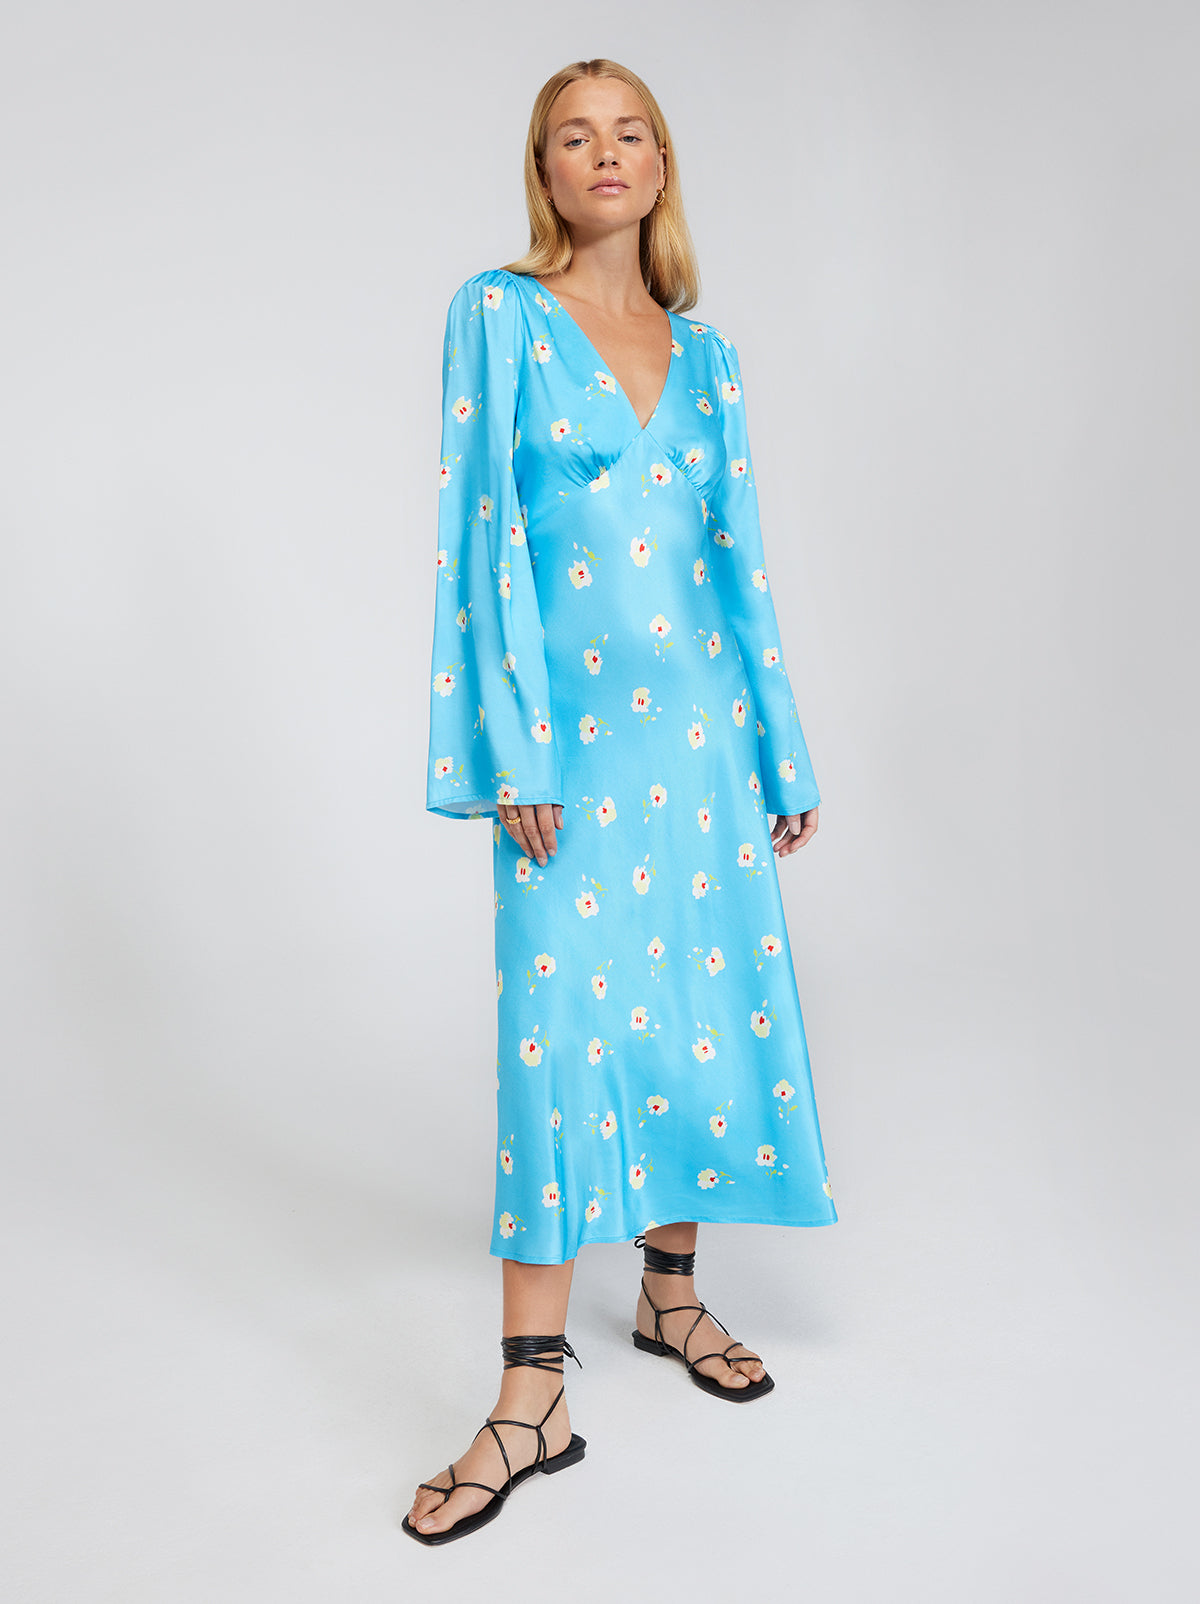 Libby Blue Pansy Print Dress By KITRI Studio